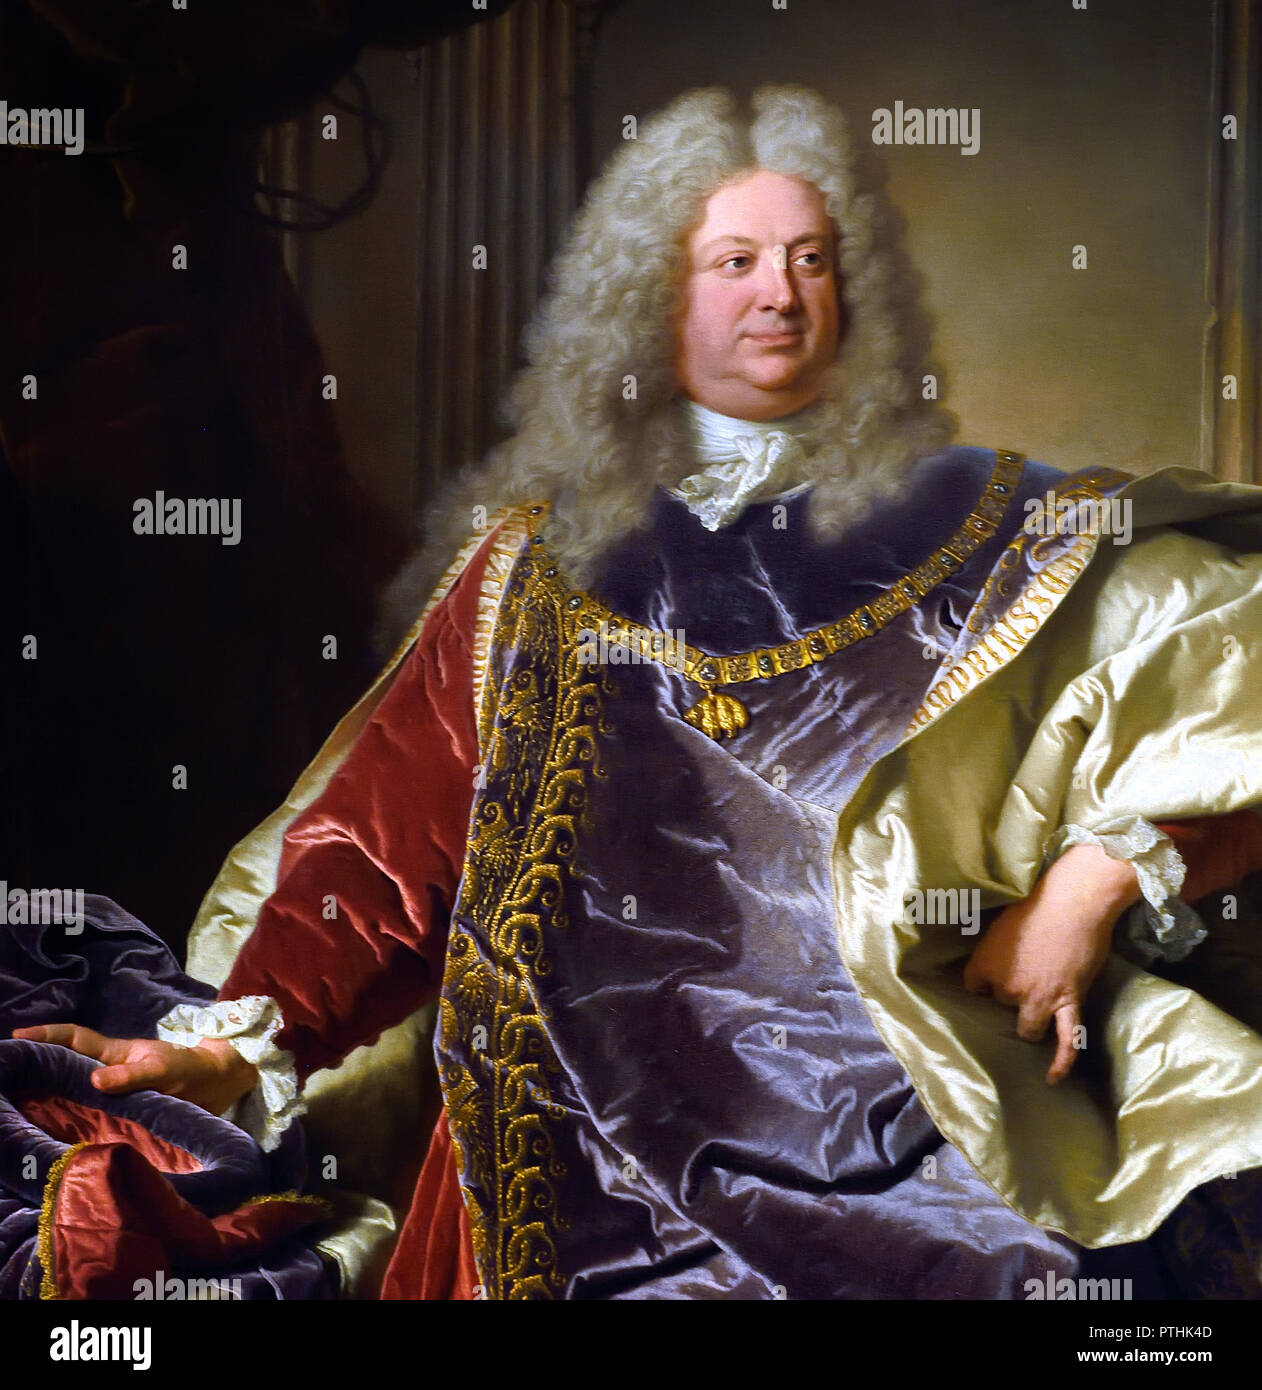 Philipp Ludwig Wenzel Sinzendorf 1671 - 1742 diplomate et homme d'État autrichien qui depuis près de quatre décennies a servi comme chancelier de la Cour responsable des affaires étrangères de la monarchie des Habsbourg. par le peintre Hyacinthe Rigaud 1659 - 1743 France Banque D'Images